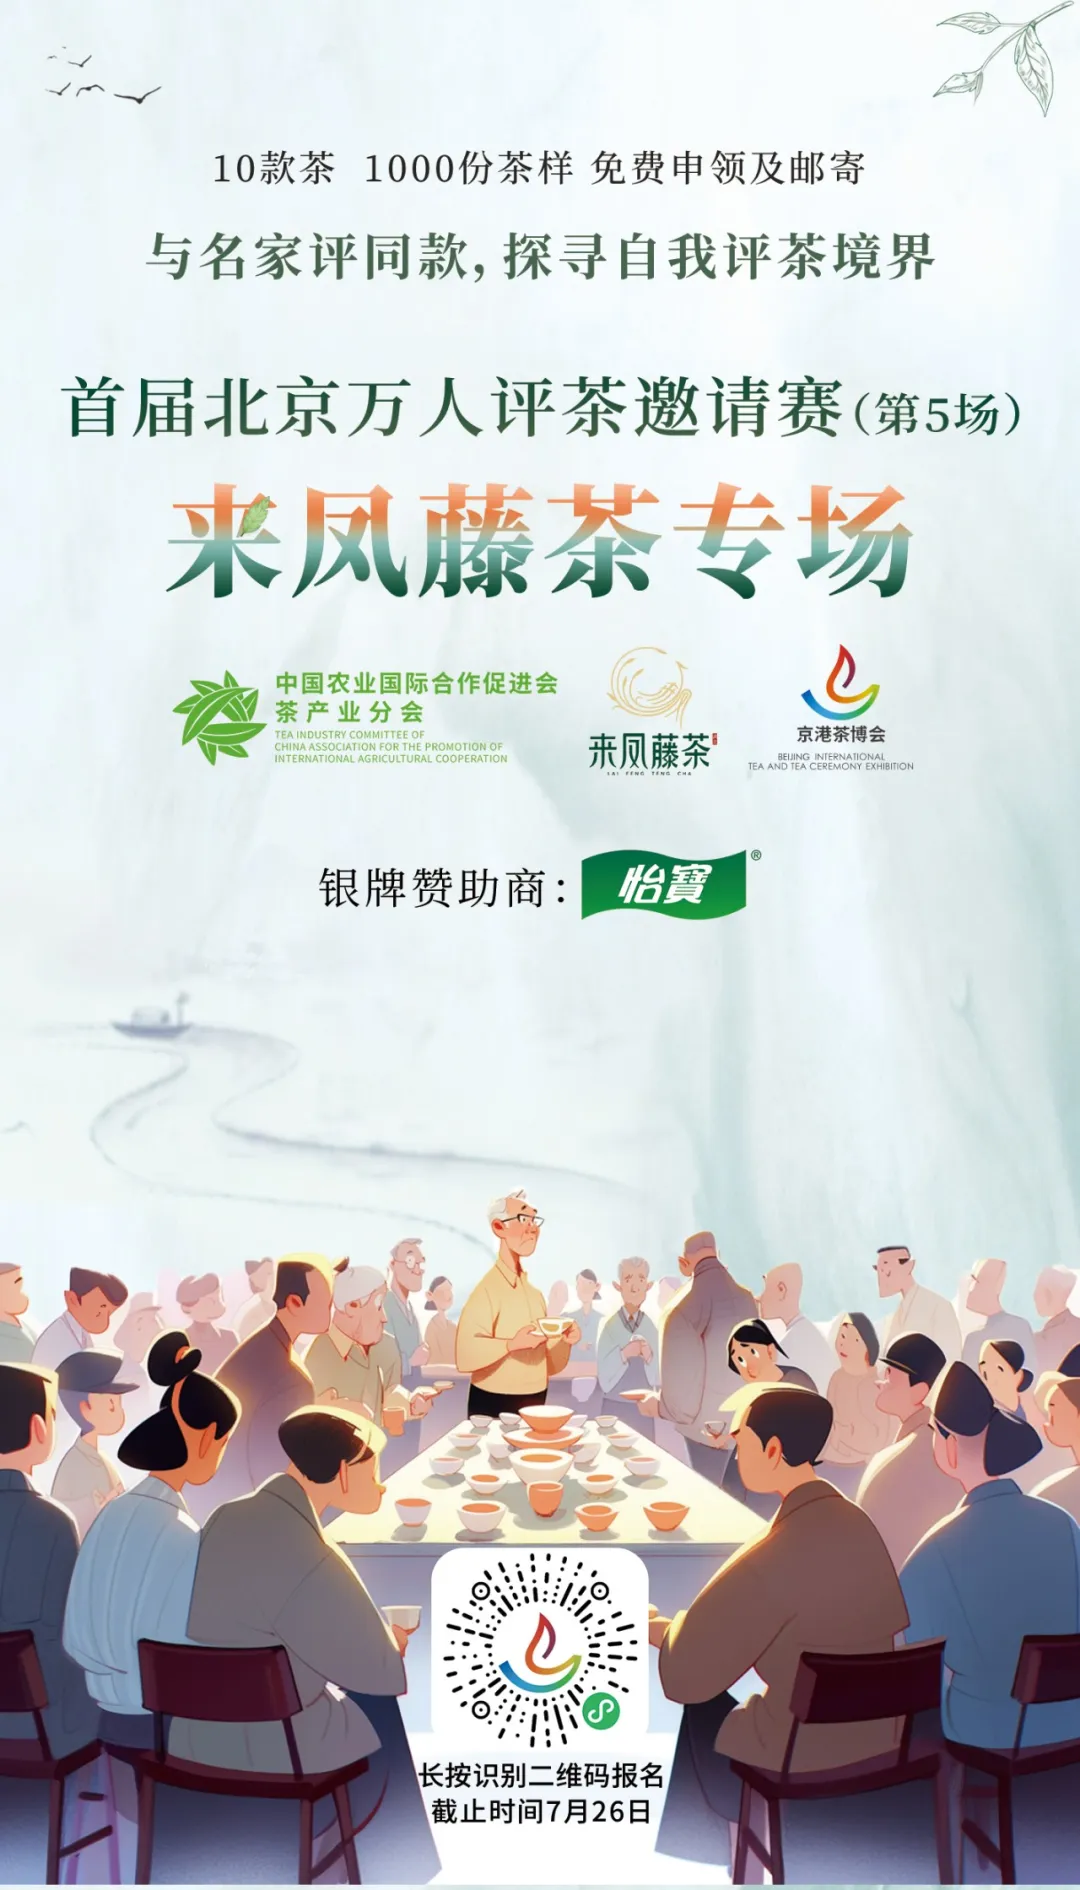 首届北京万人评茶邀请赛”来凤藤茶专场报名开启！